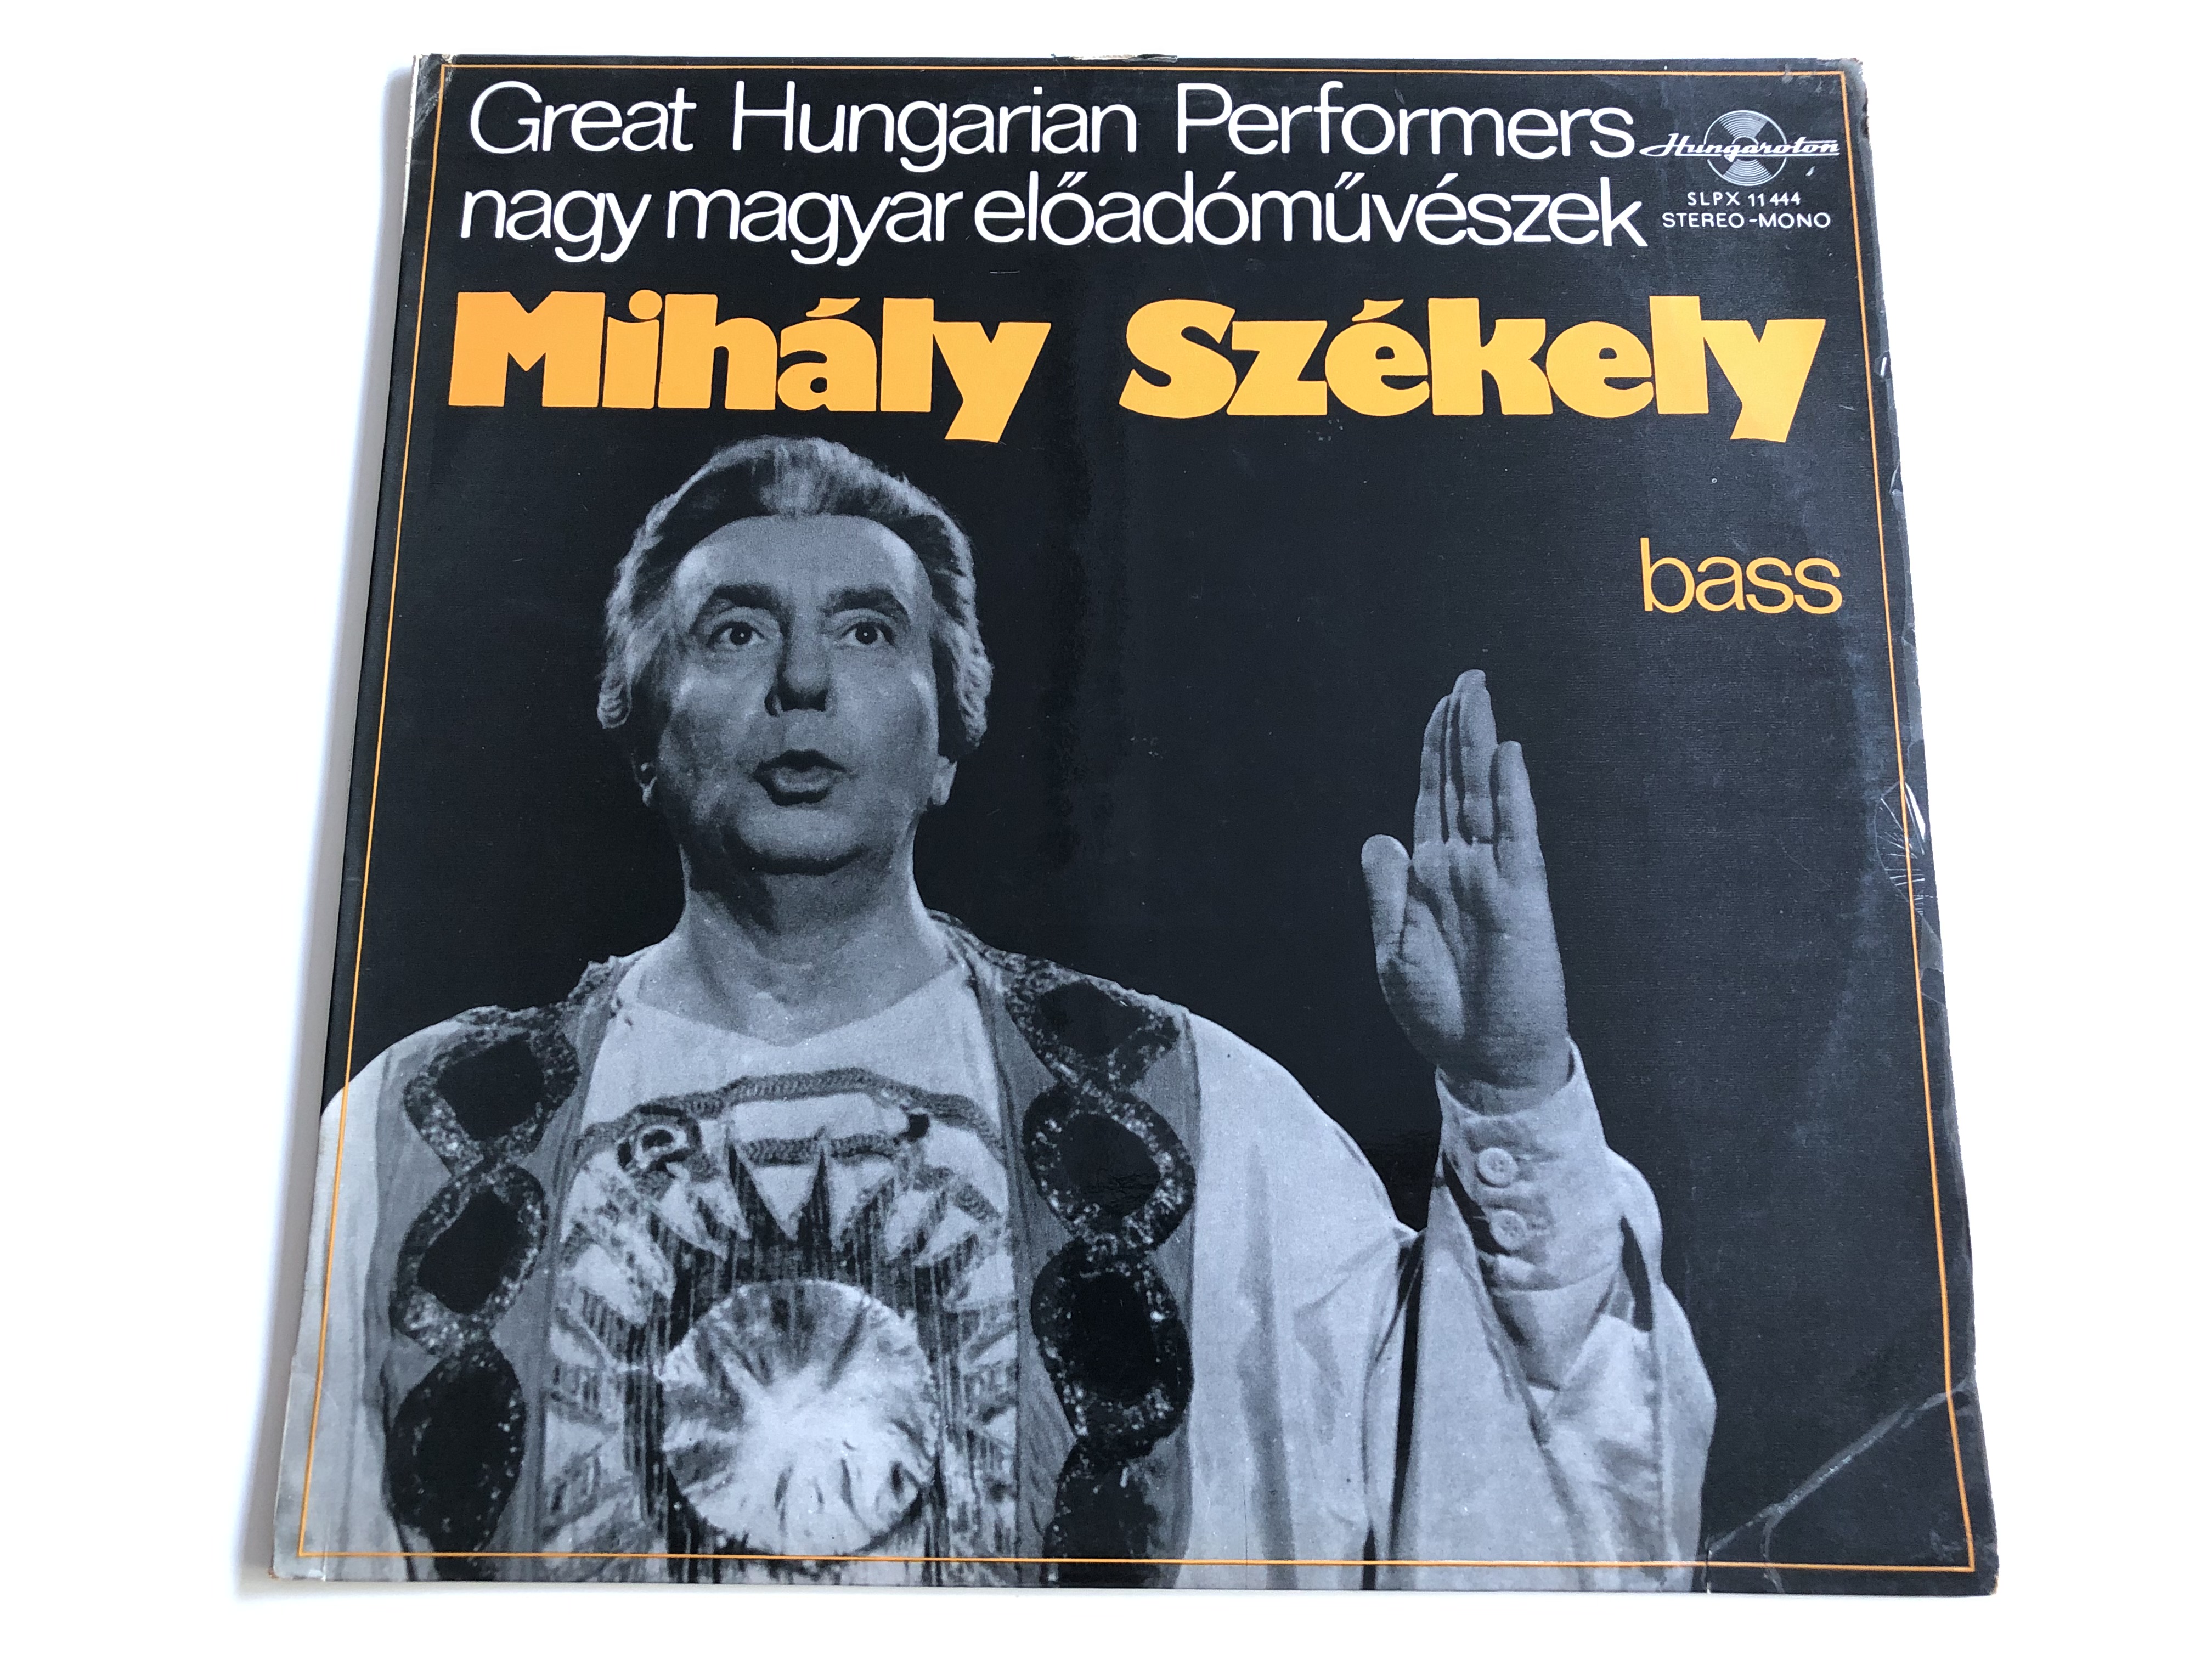 Great Hungarian Performers nagy magyar eloadomuveszek - Mihály Székely /  HUNGAROTON LP STEREO - MONO / SLPX 11444 - bibleinmylanguage